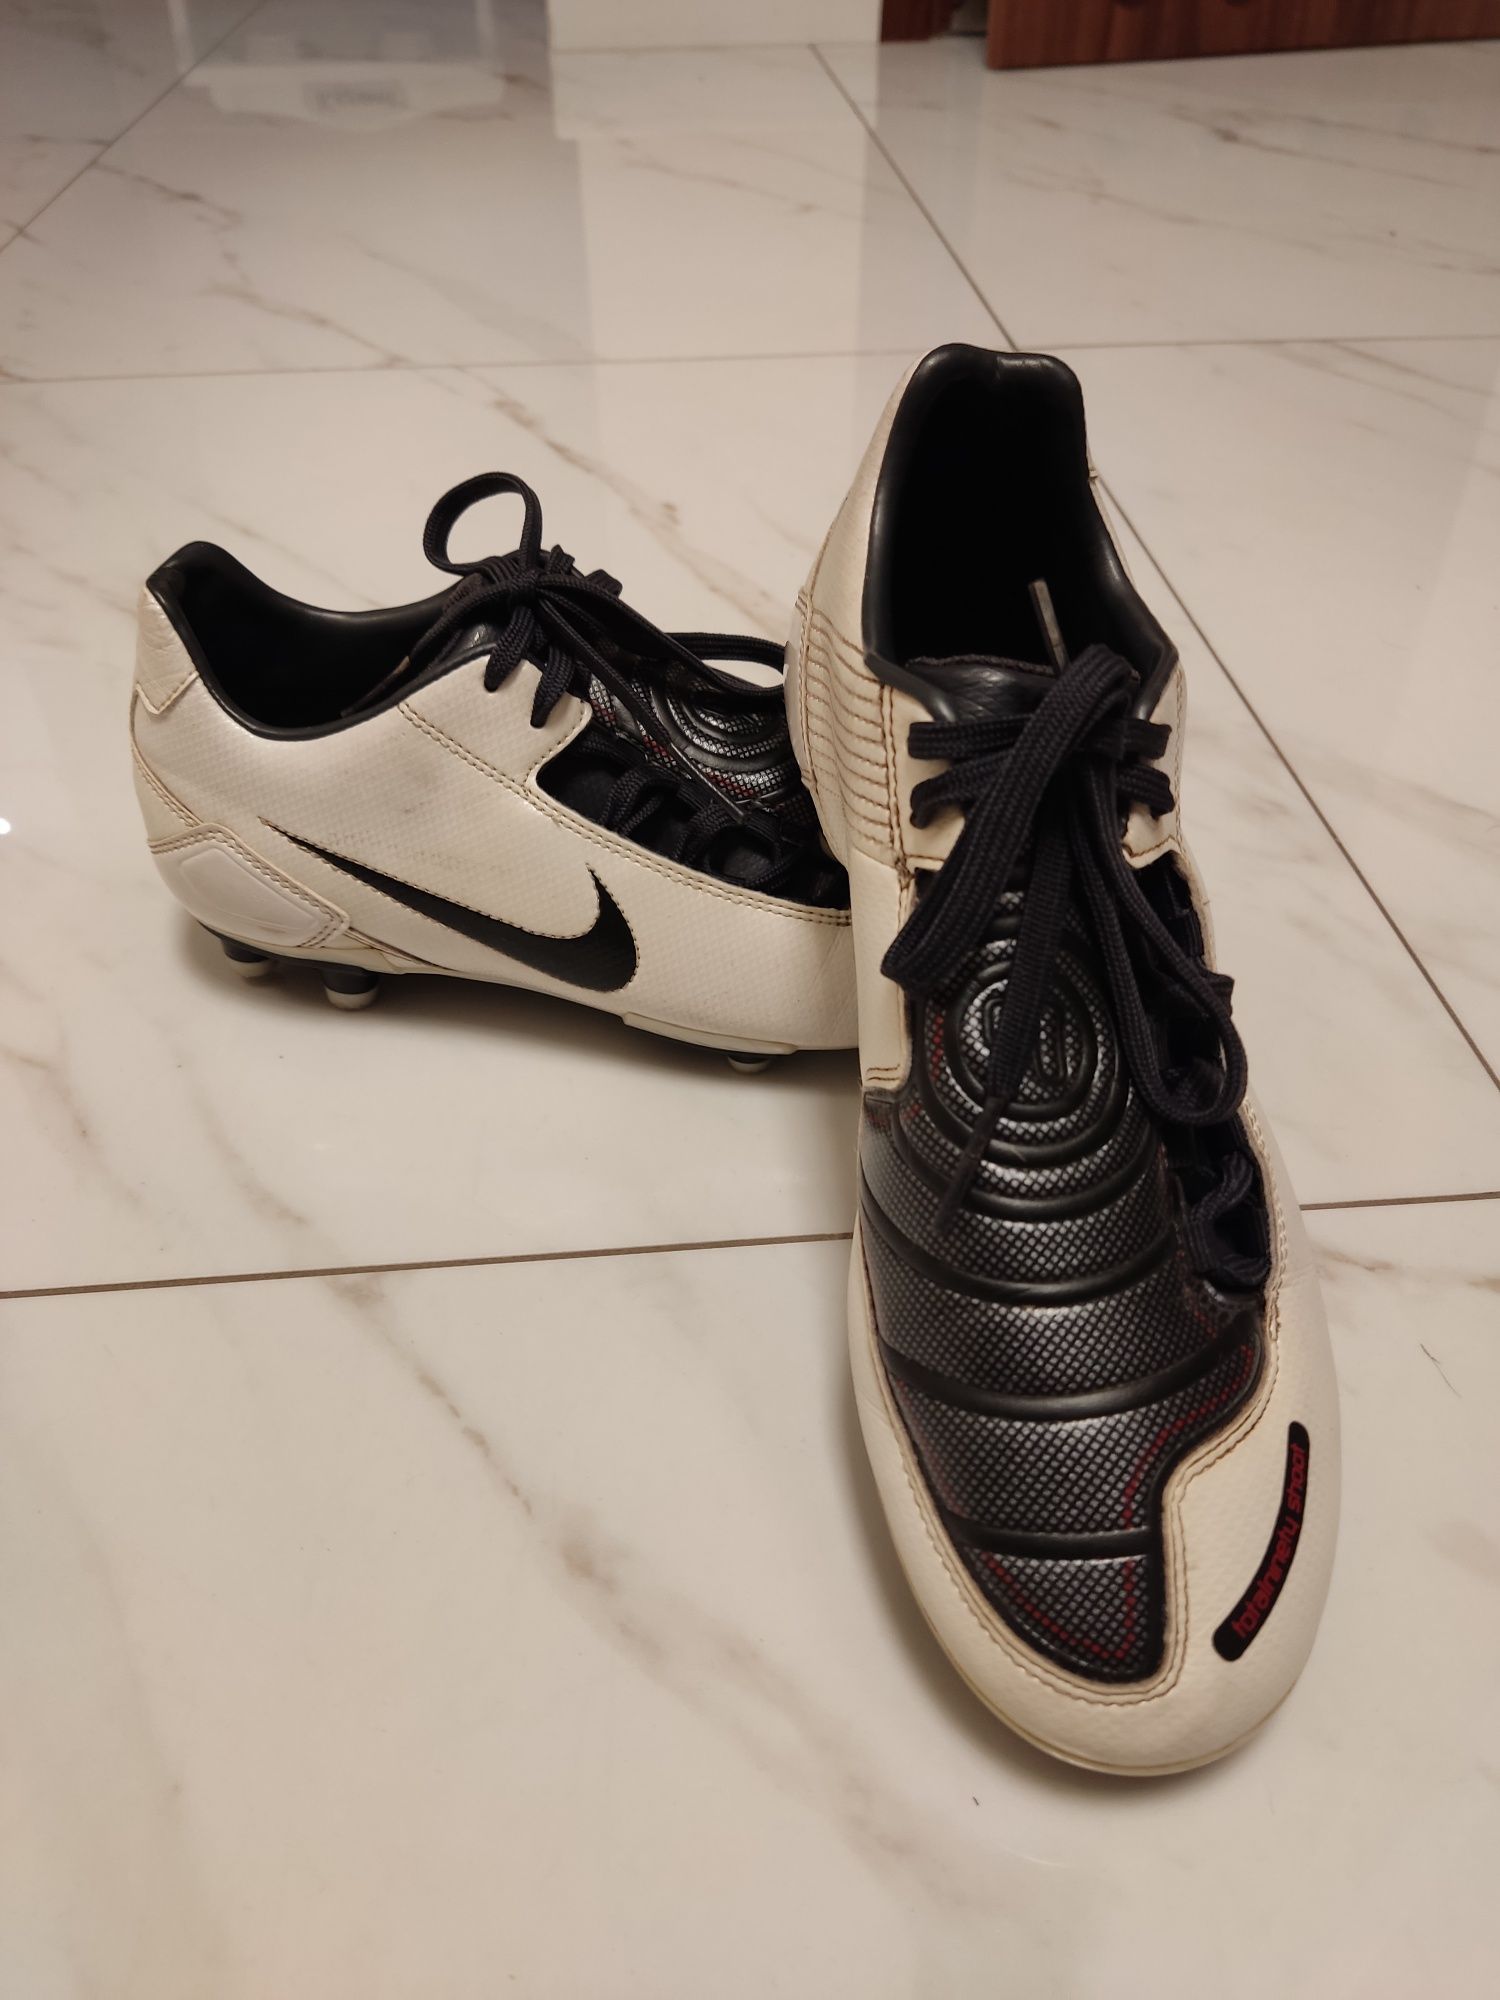 Buty piłkarskie korki Nike rozmiar 38.5